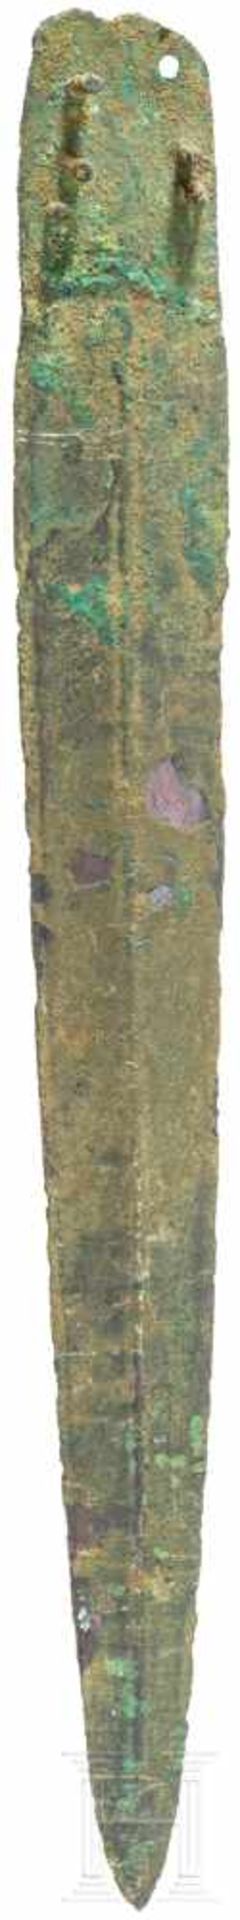 Dolch, Mitteleuropa, Späte Bronzezeit, Stufe D, 13. Jhdt. v. Chr.Griffplattendolch mit Mittelgrat,